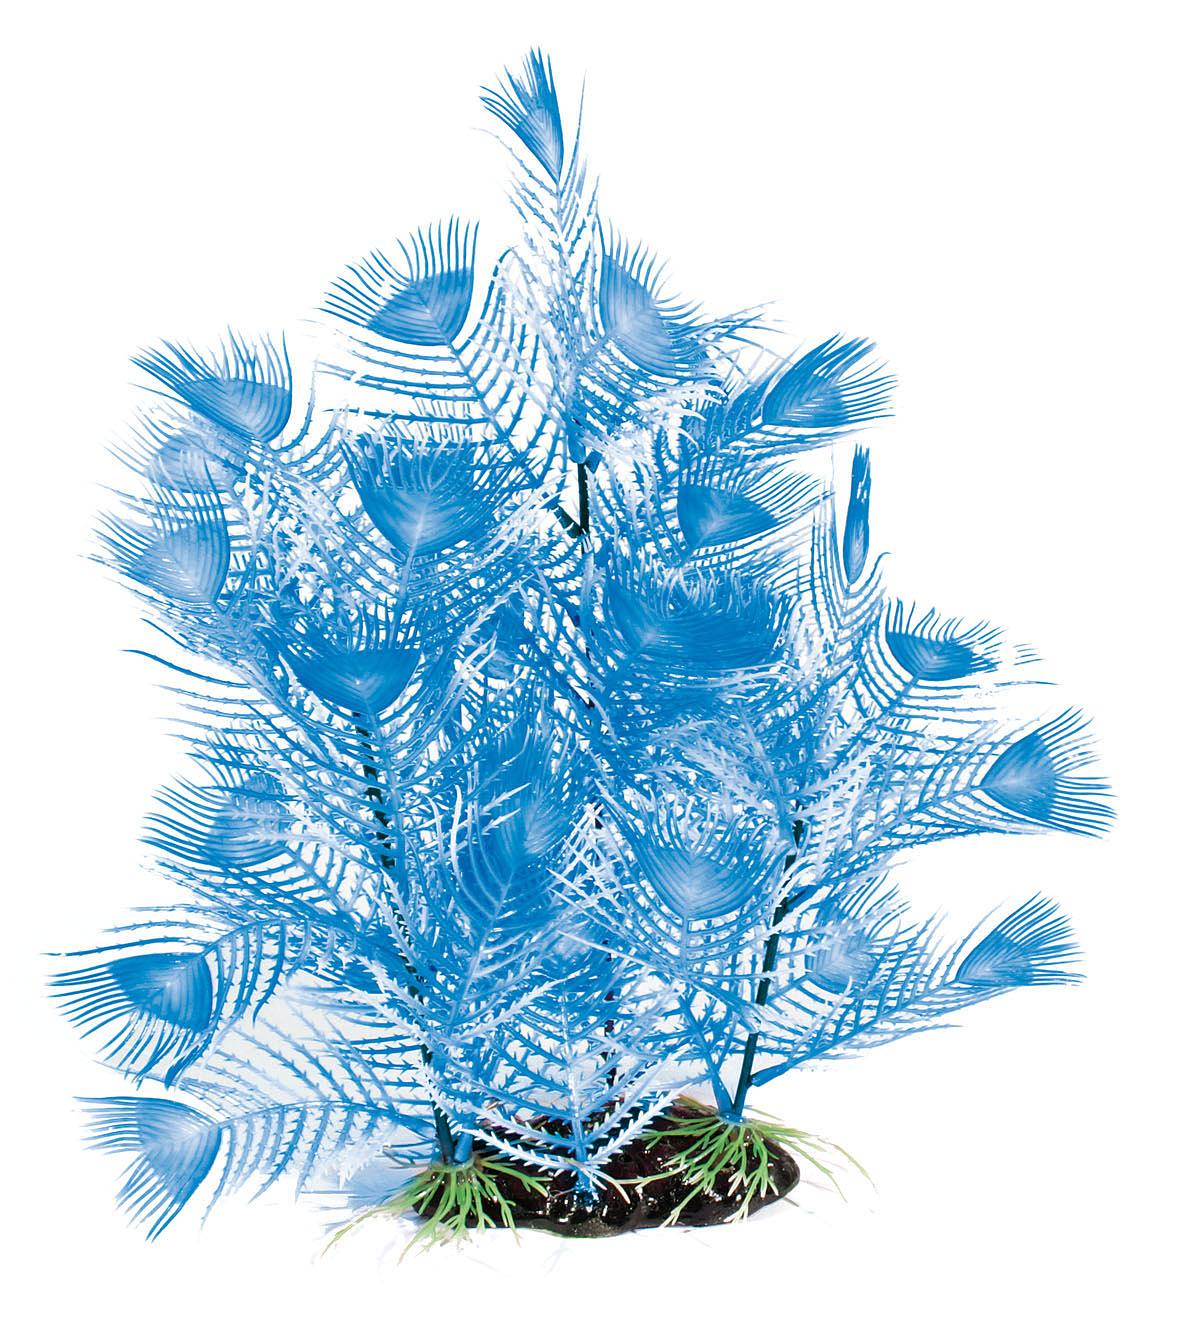 Amazonas Fantasy Plant AL, bleue